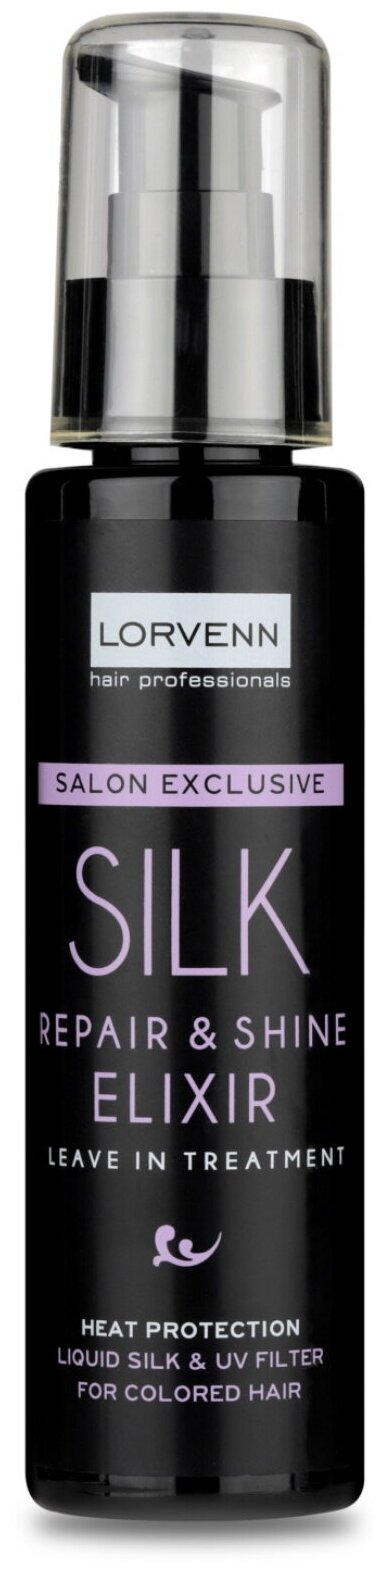 Эликсир SILK для восстановления и блеска LORVENN HAIR PROFESSIONALS с жидким шелком 100 мл